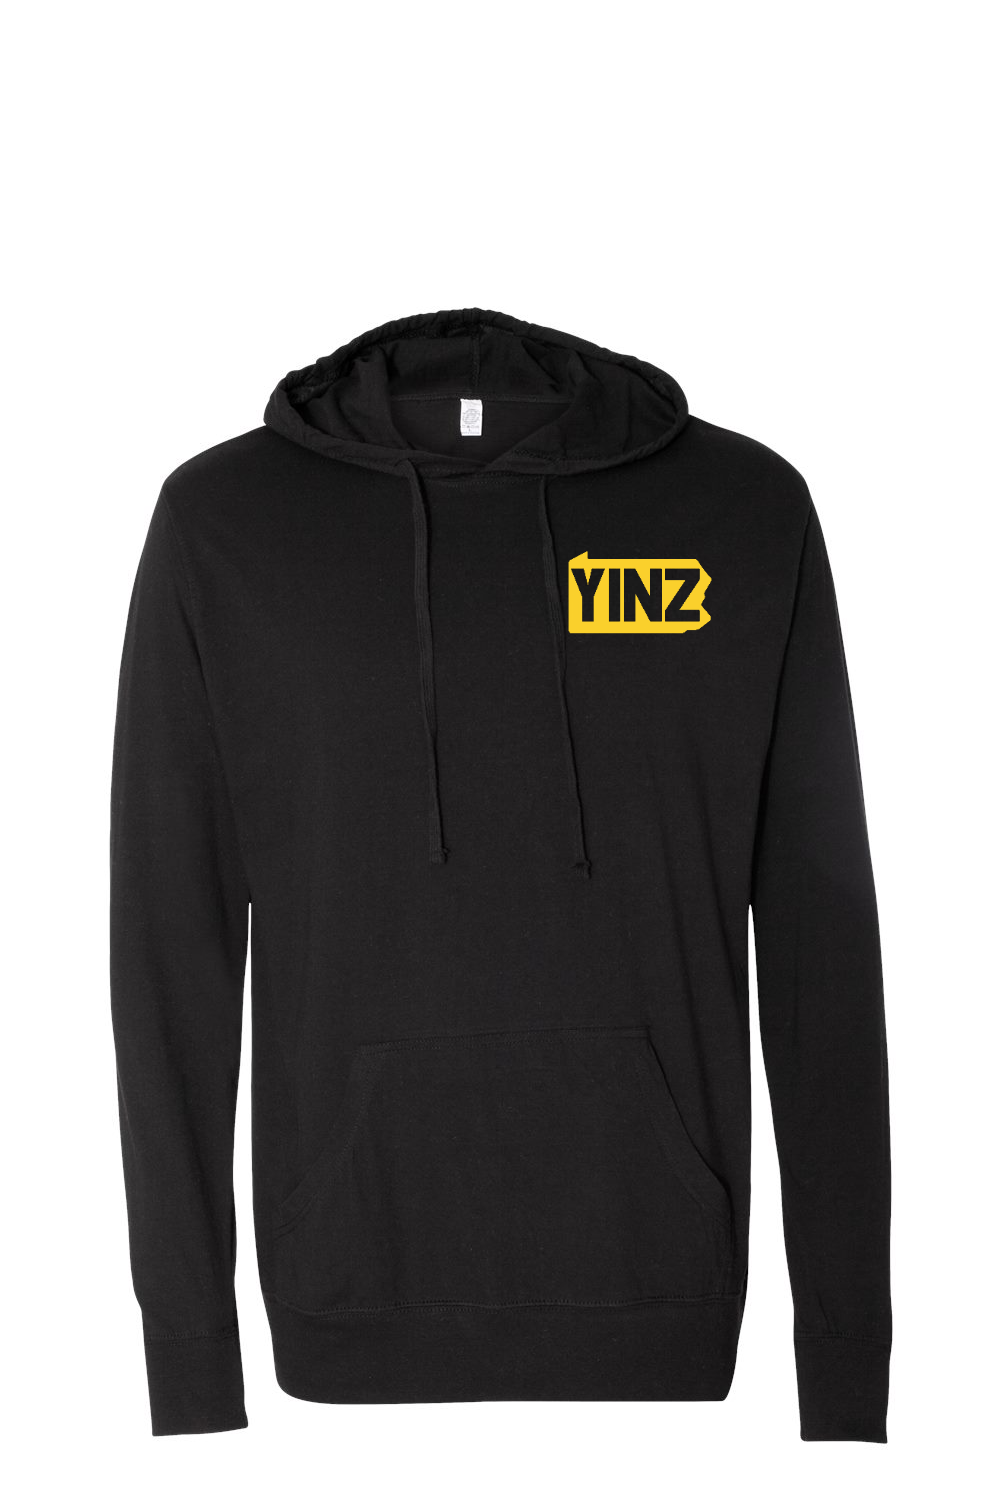 Yinzylvania - Hooded Pullover T-Shirt - Yinzylvania